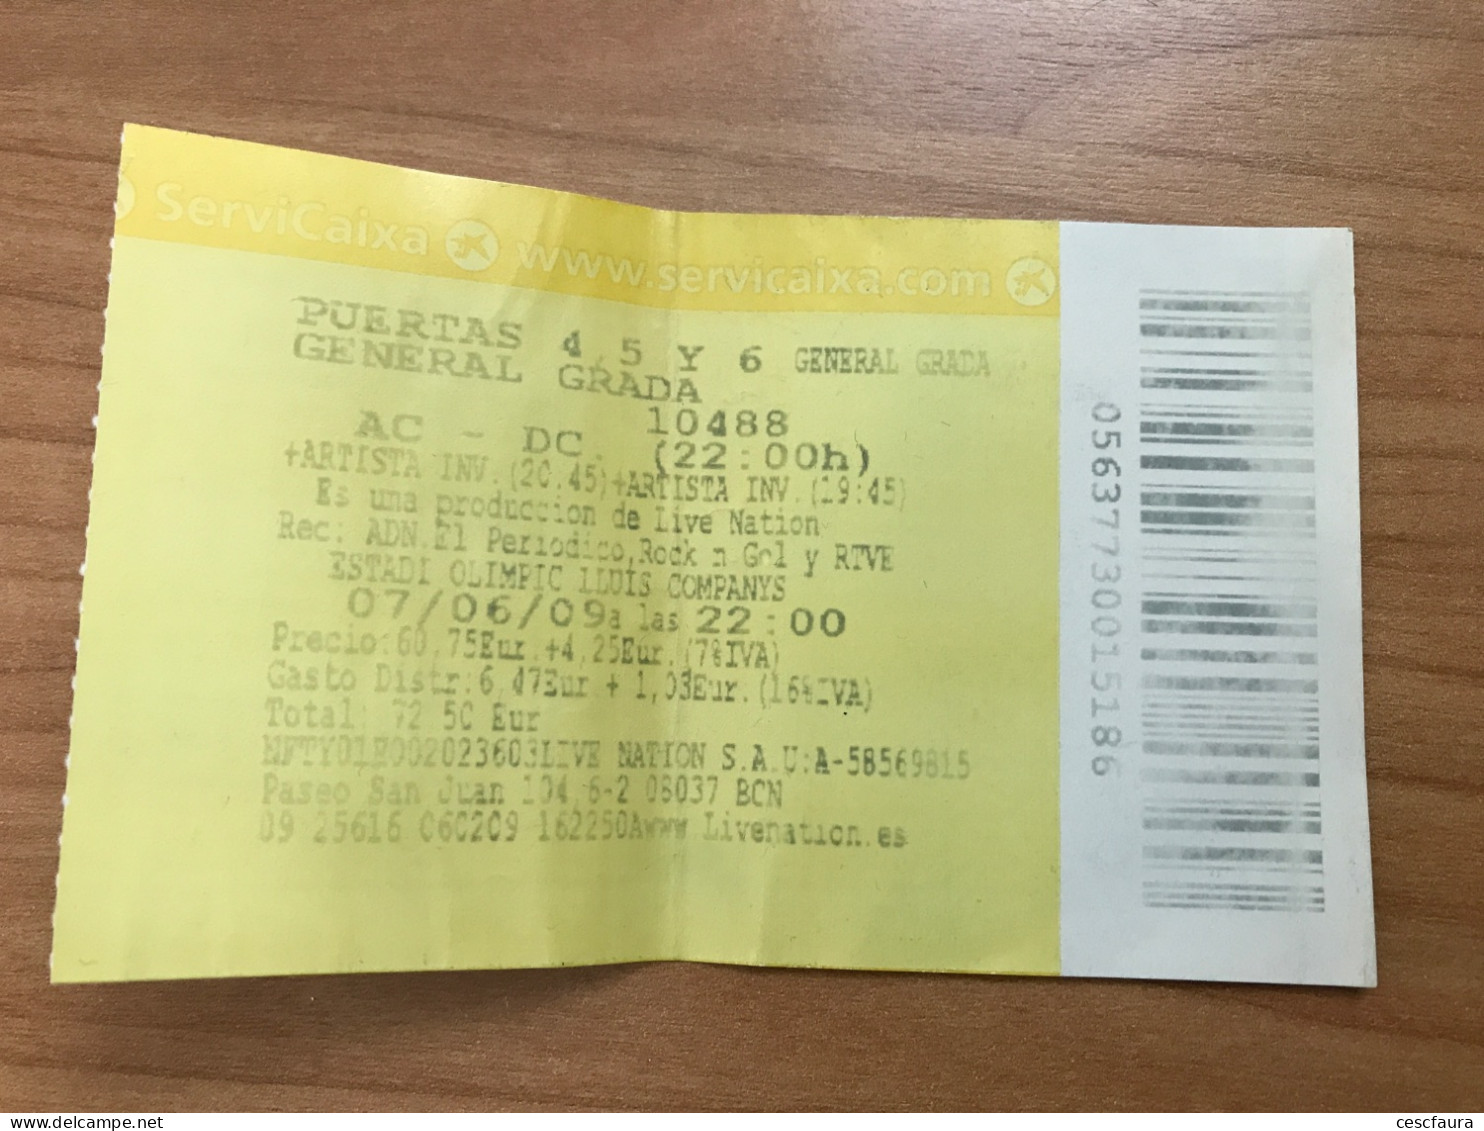 AC/DC Vintage Concert Ticket Barcelona 07/06/2009 Estadi Olímpic Entrada Billet - Concert Tickets